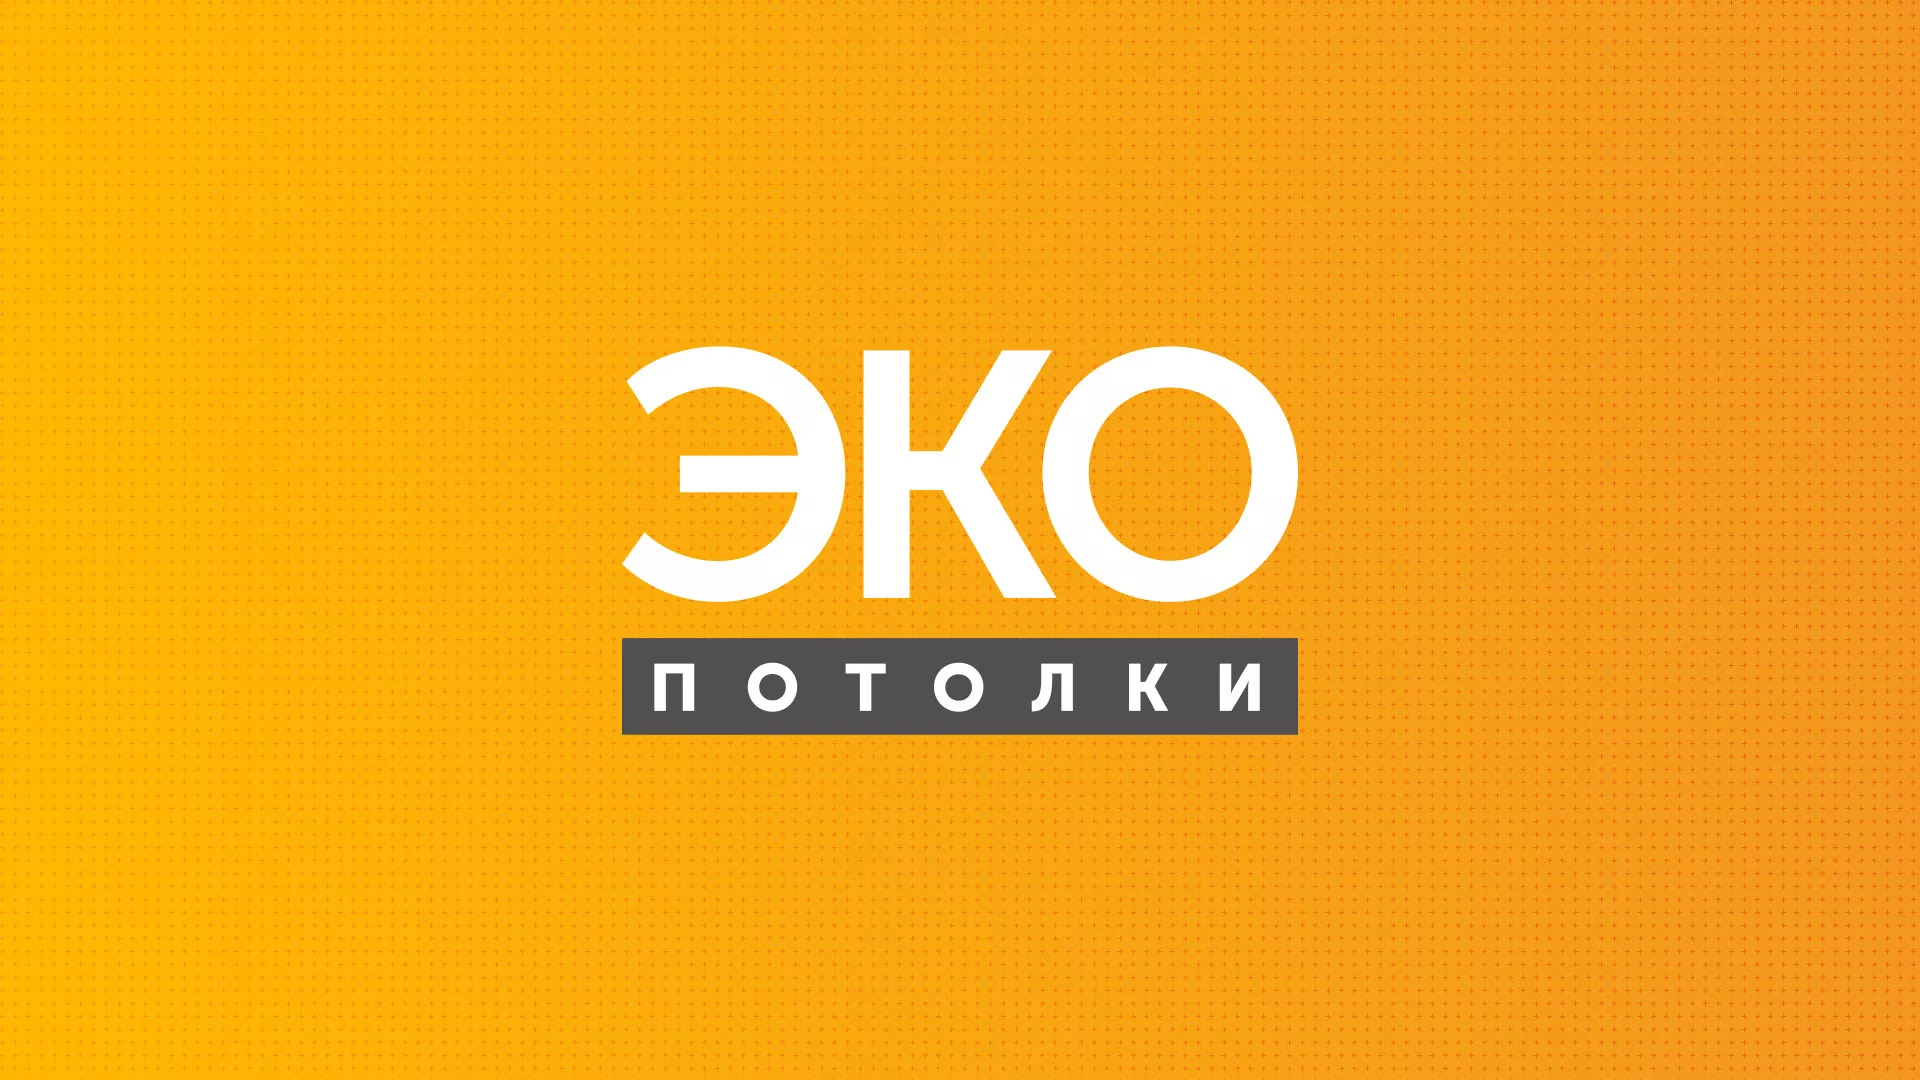 Разработка сайта по натяжным потолкам «Эко Потолки» в Петропавловске-Камчатском